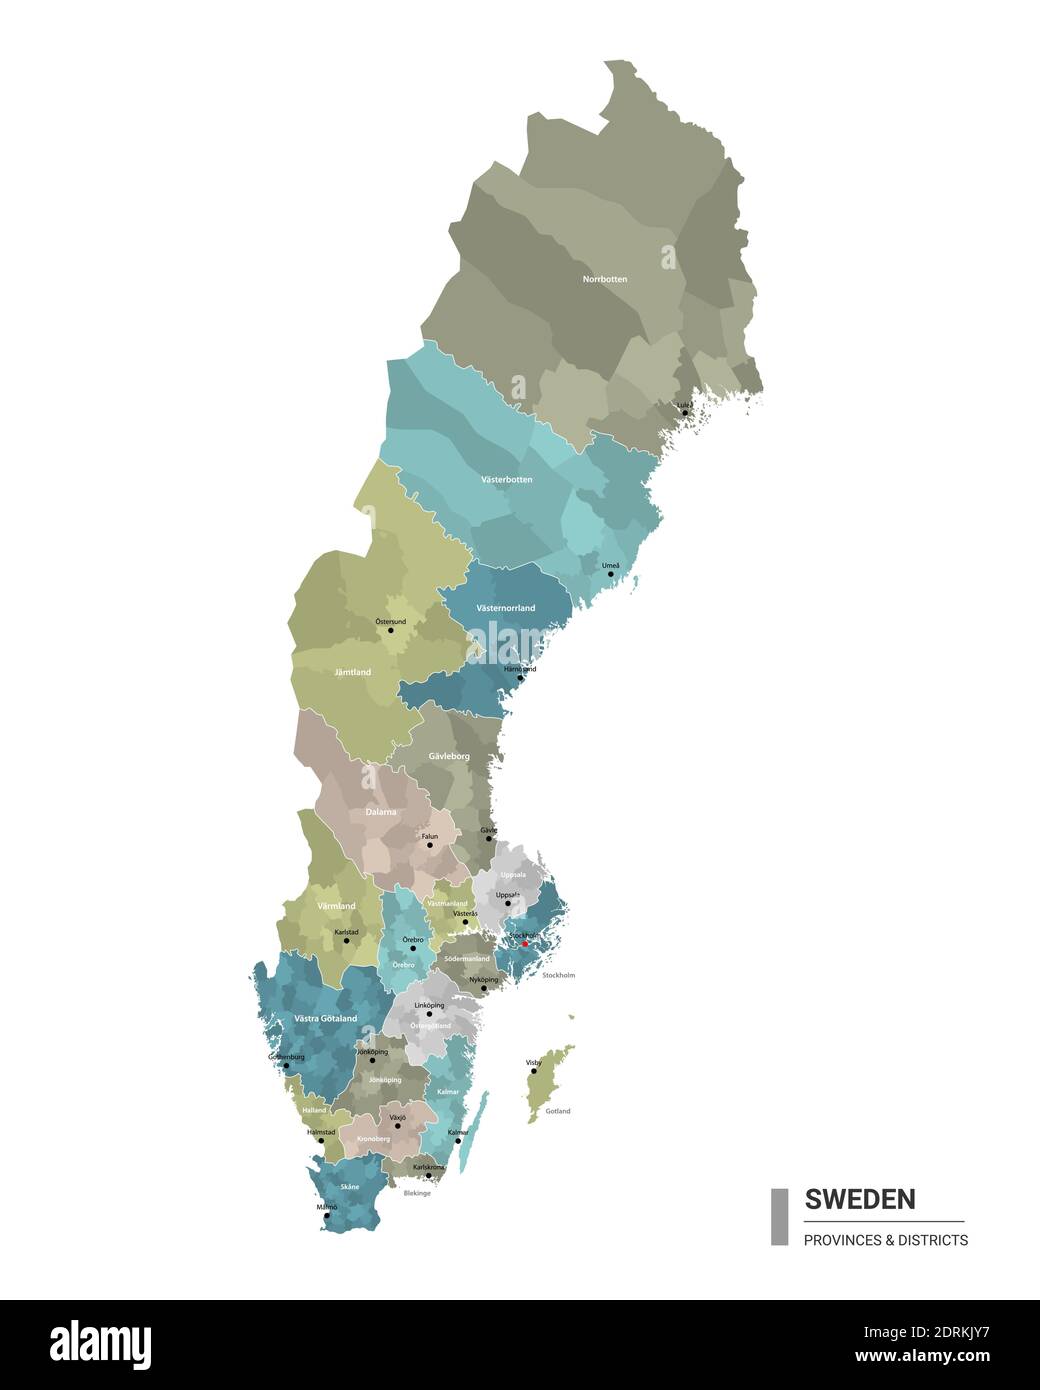 La Svezia ha una mappa dettagliata con suddivisioni. Mappa amministrativa della Svezia con il nome dei distretti e delle città, colorata per stati e distretto amministrativo Illustrazione Vettoriale